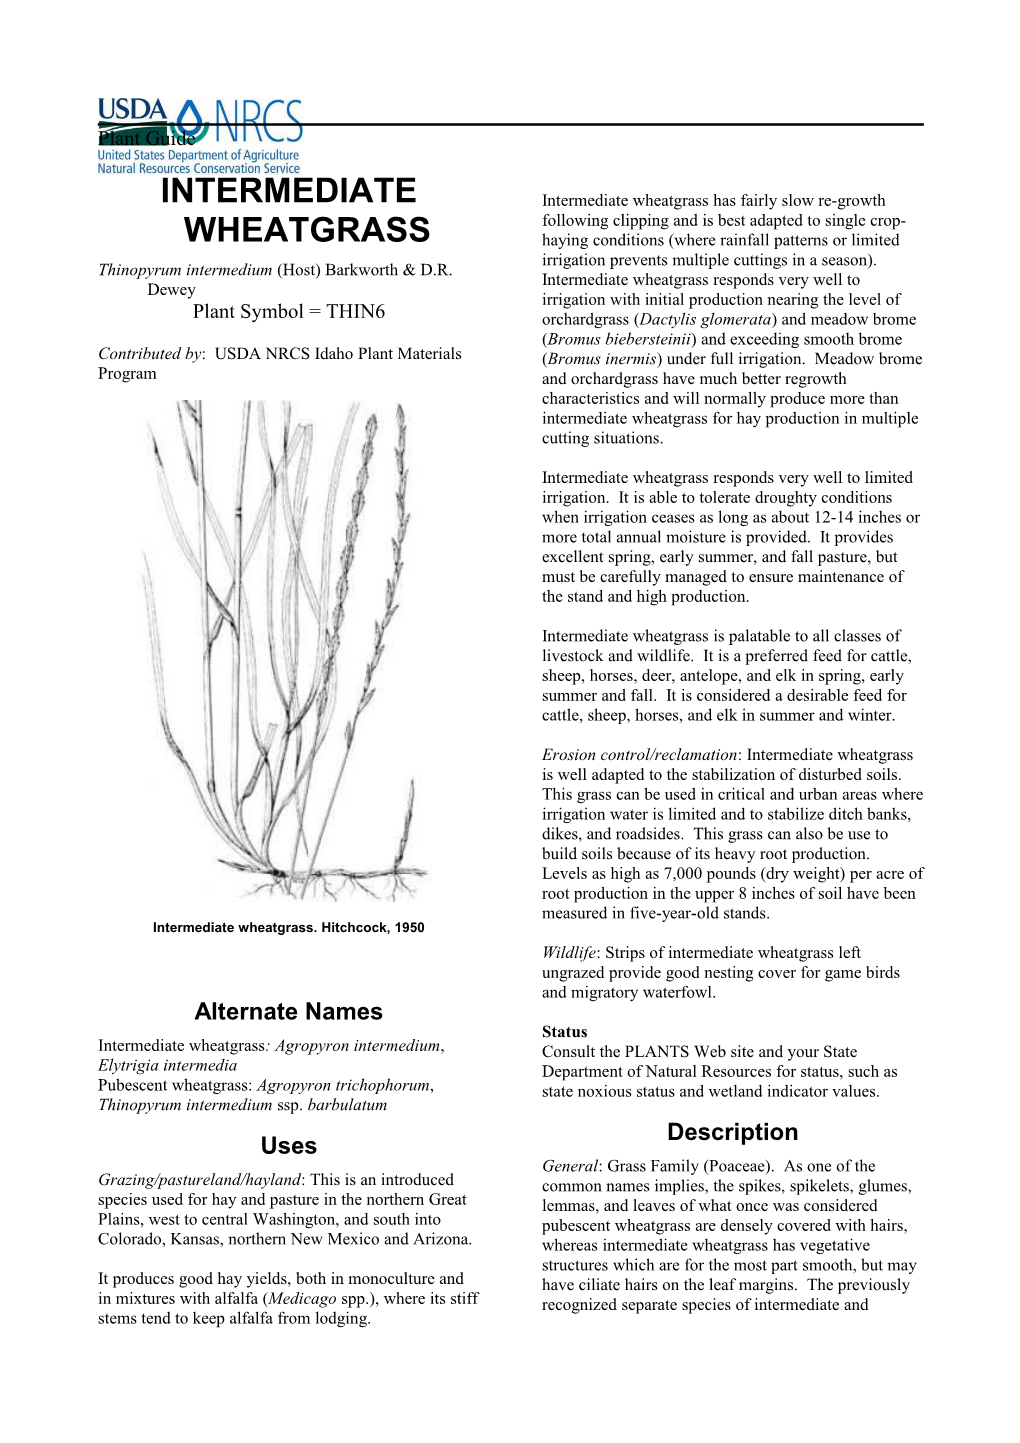 Plant Guide for Intermediate Wheatgrass (Thinopyrum Intermedium) s1